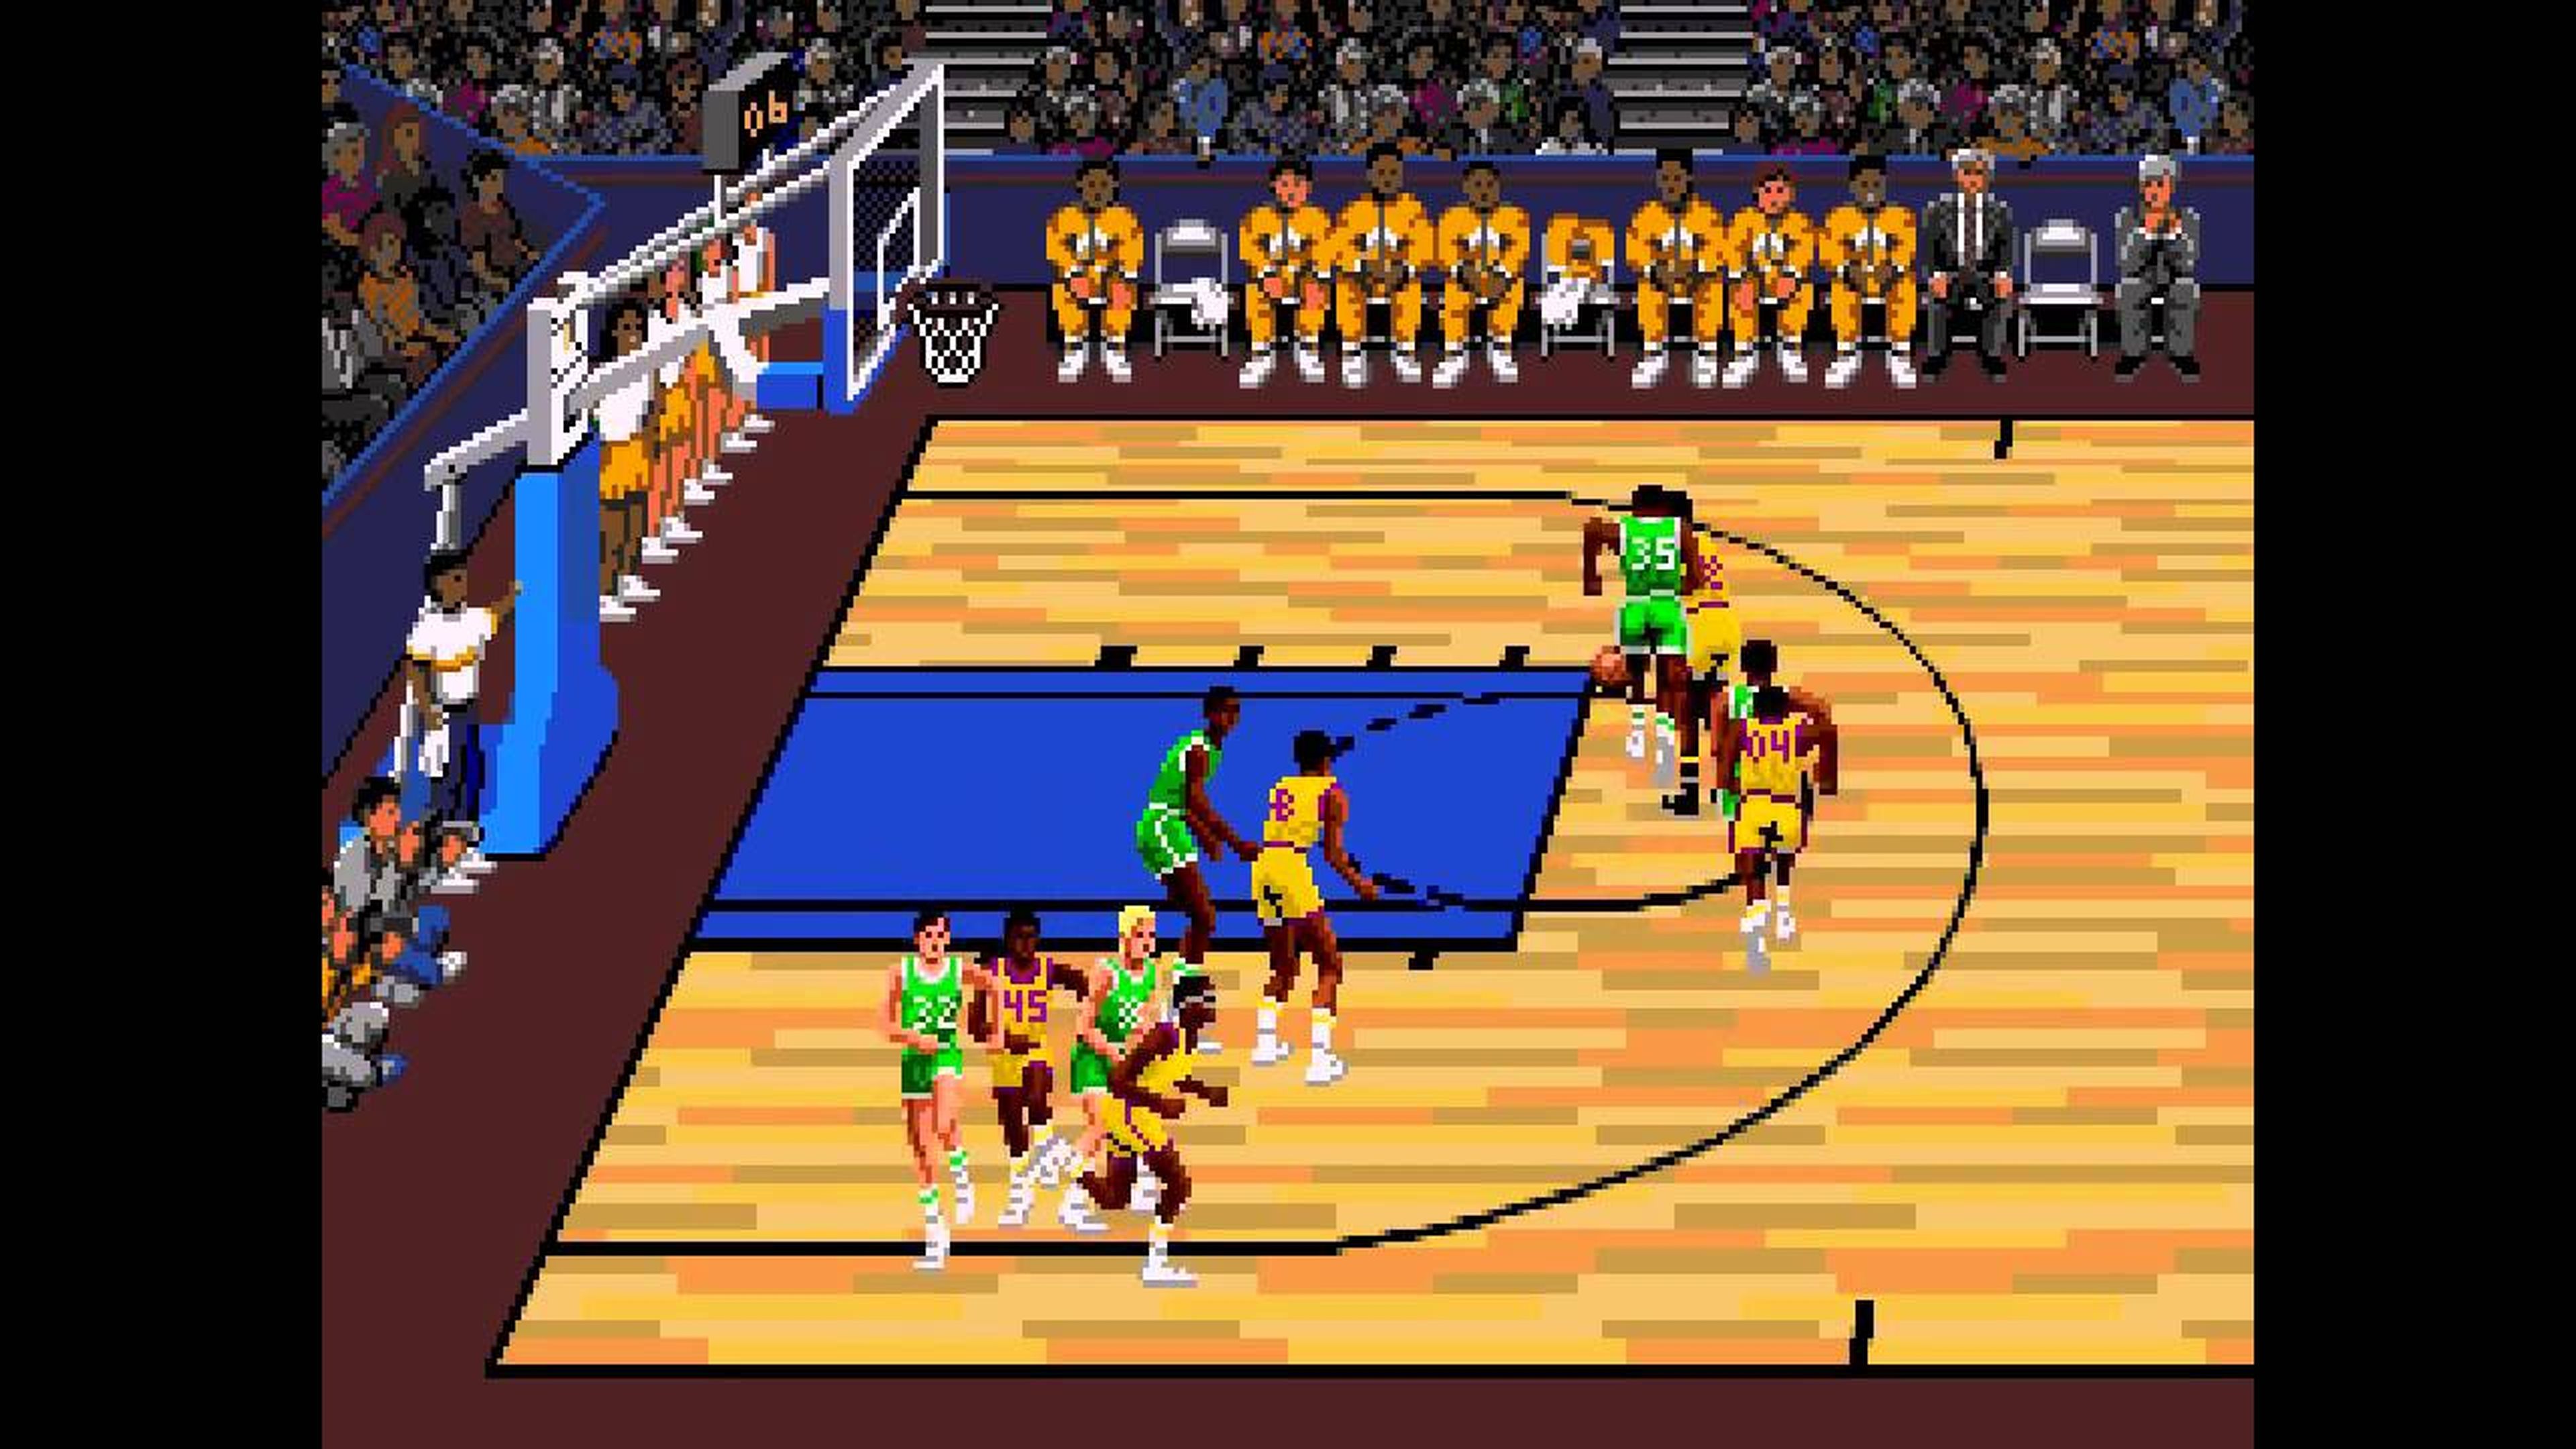 Lakers vs Celtics